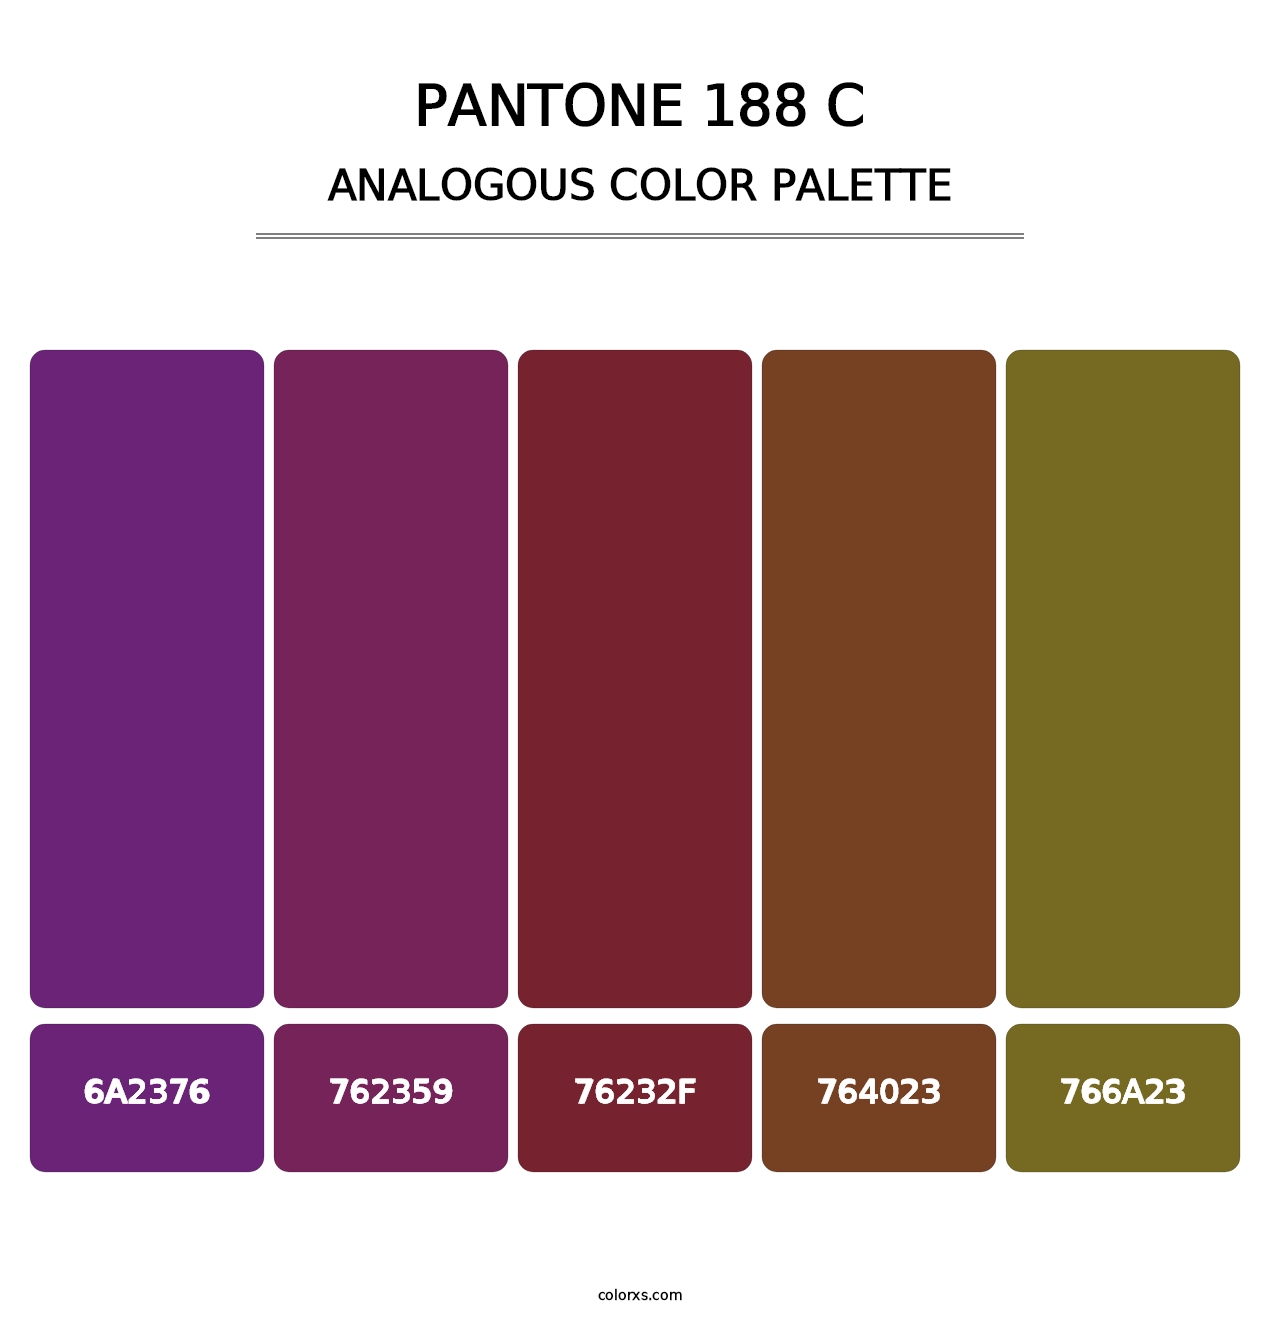 PANTONE 188 C - Analogous Color Palette